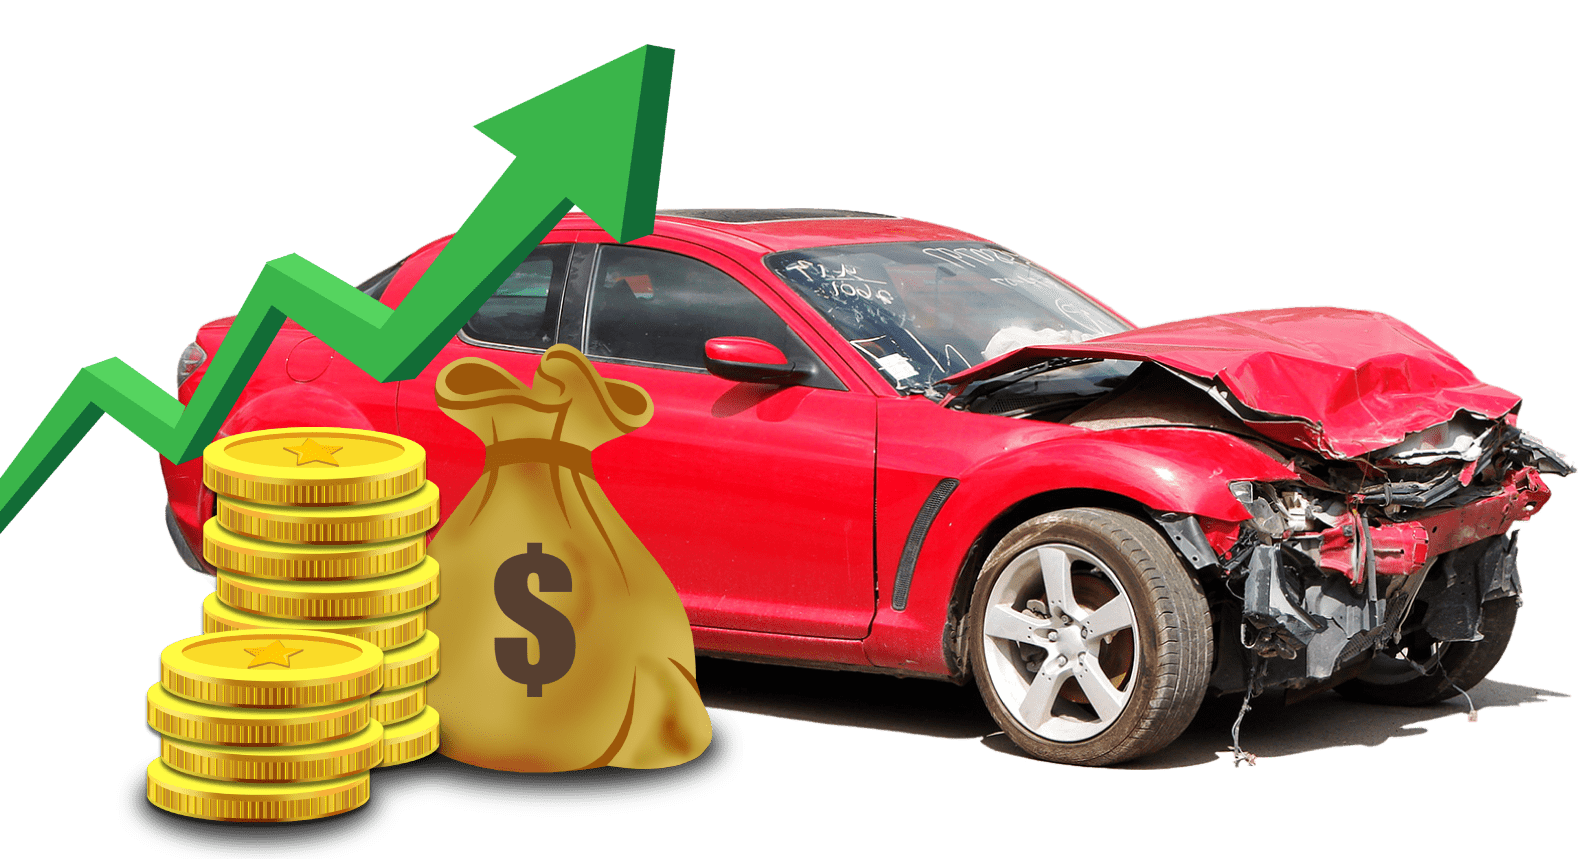  Cash for used cars Neurum 